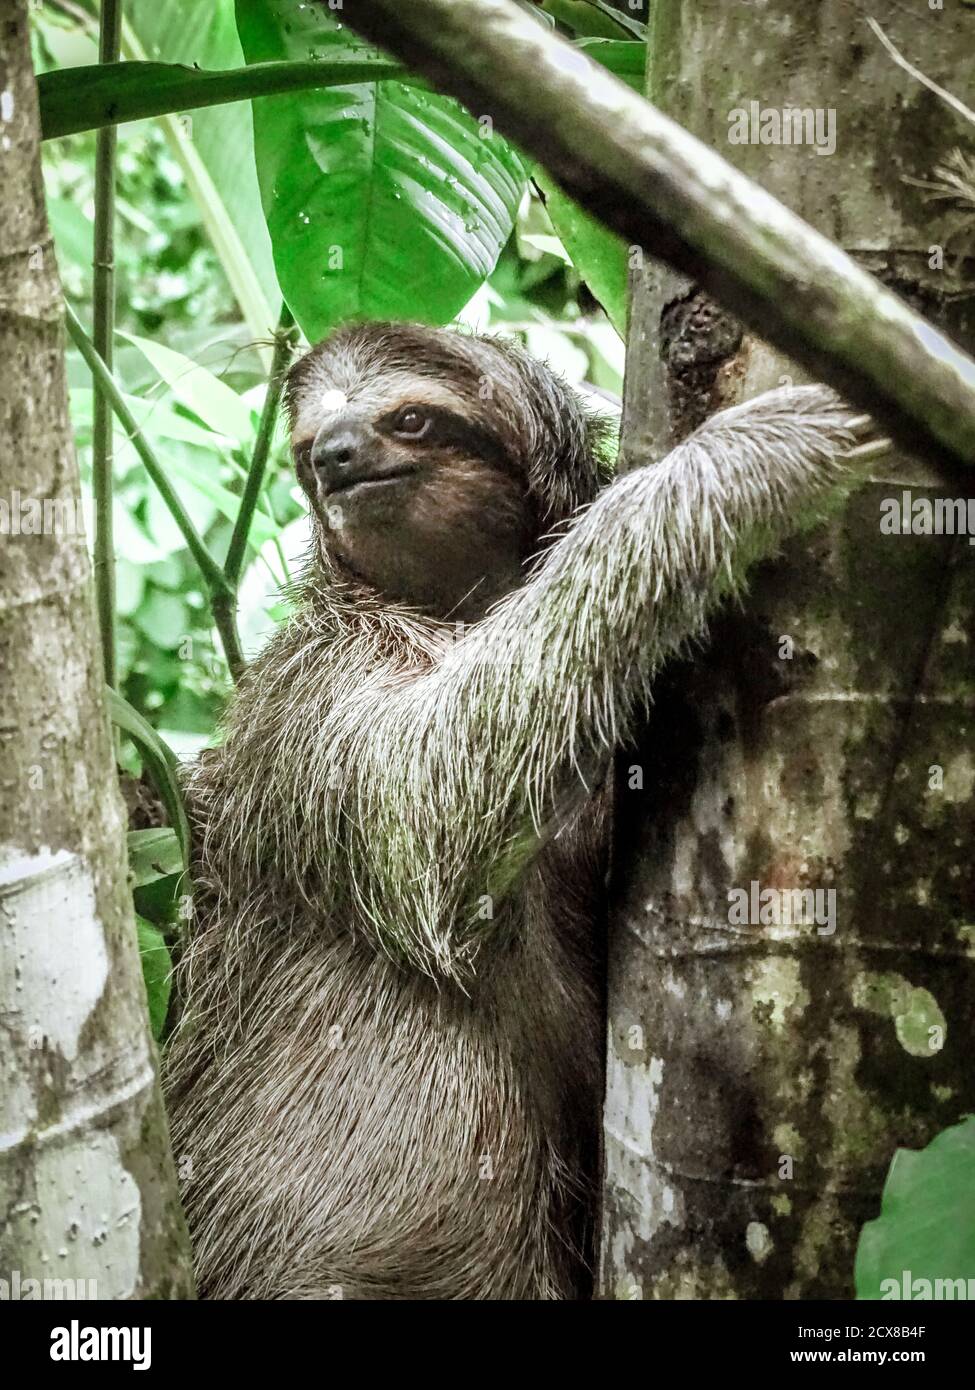 Three-toed sloth climbing up the tree at Panama’s Isla Bastimentos. Stock Photo